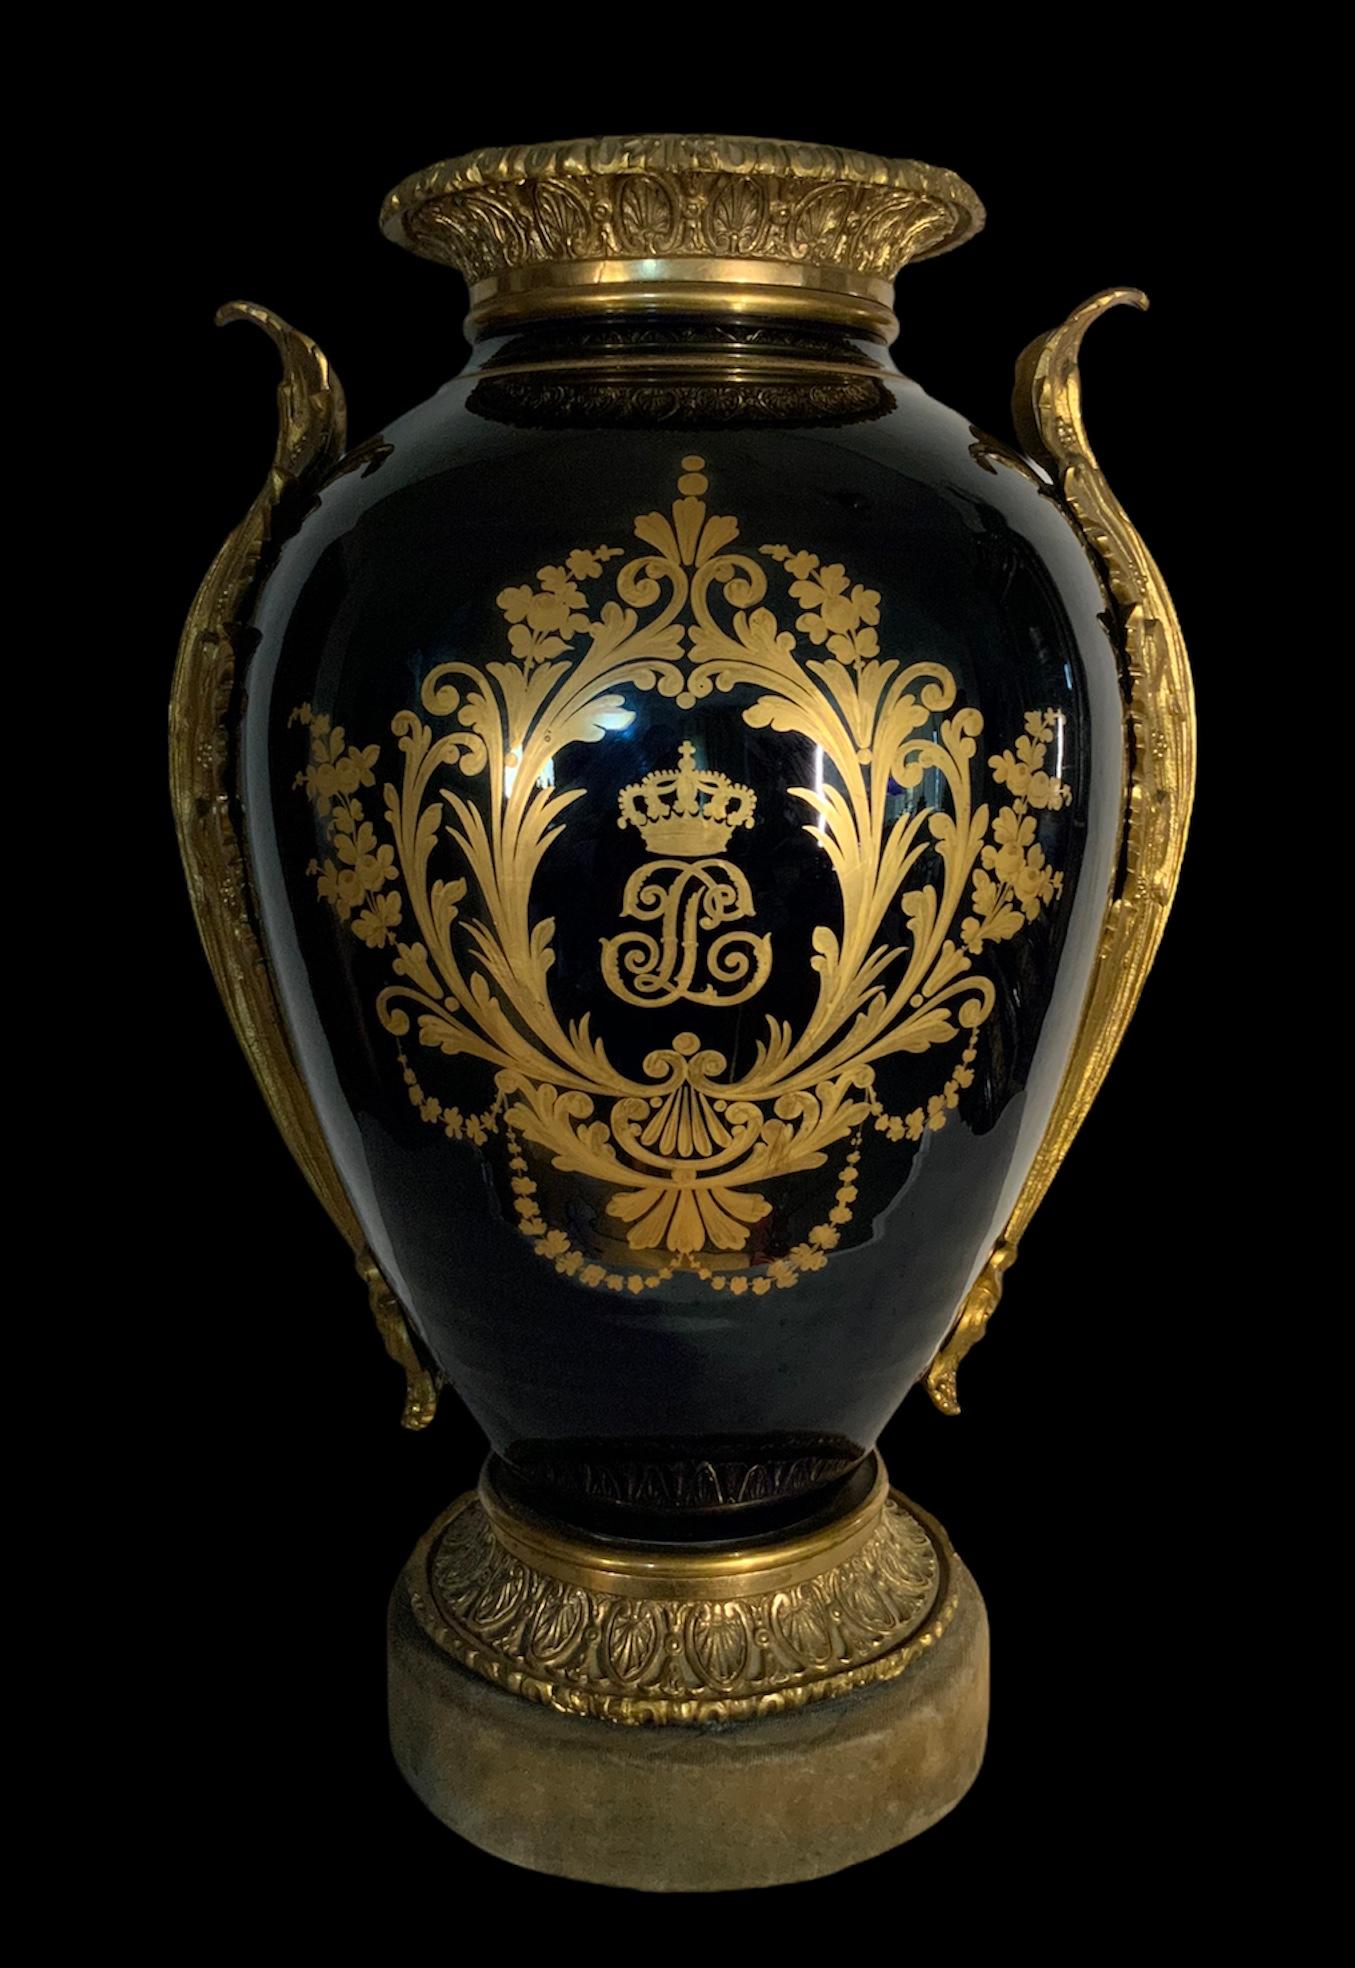 Il s'agit d'une énorme urne en porcelaine peinte à la main en bronze, représentant une peinture de La Naissance et le Triomphe de Vénus d'après le peintre François Boucher-1740. La peinture ovale est encadrée par des volutes dorées peintes à la main